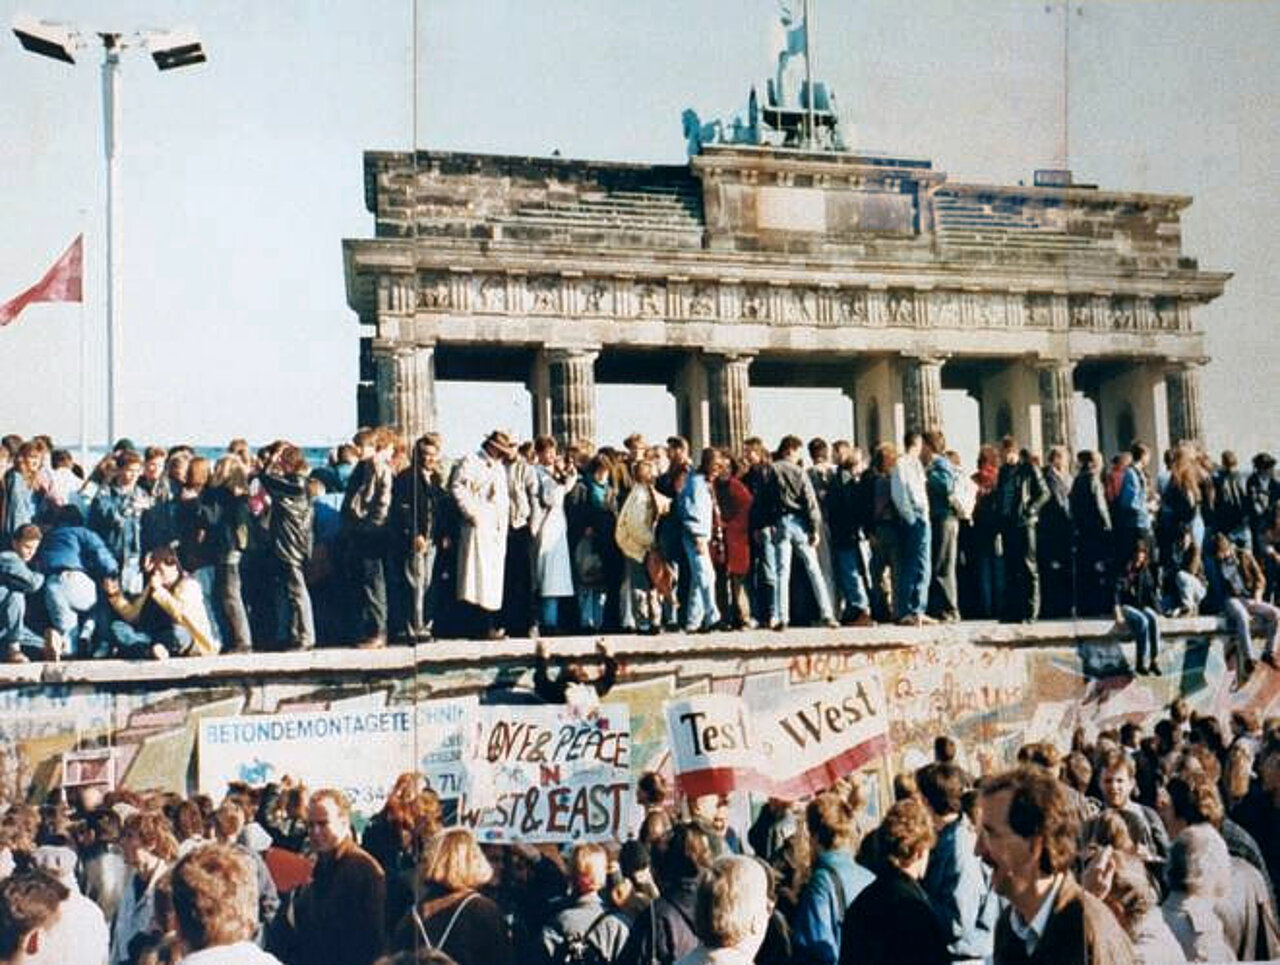 Farbfoto: Eine große Gruppe an Menschen steht vor und auf der Berliner Mauer, im Hintergrund ist das Brandenburger Tor zu sehen.